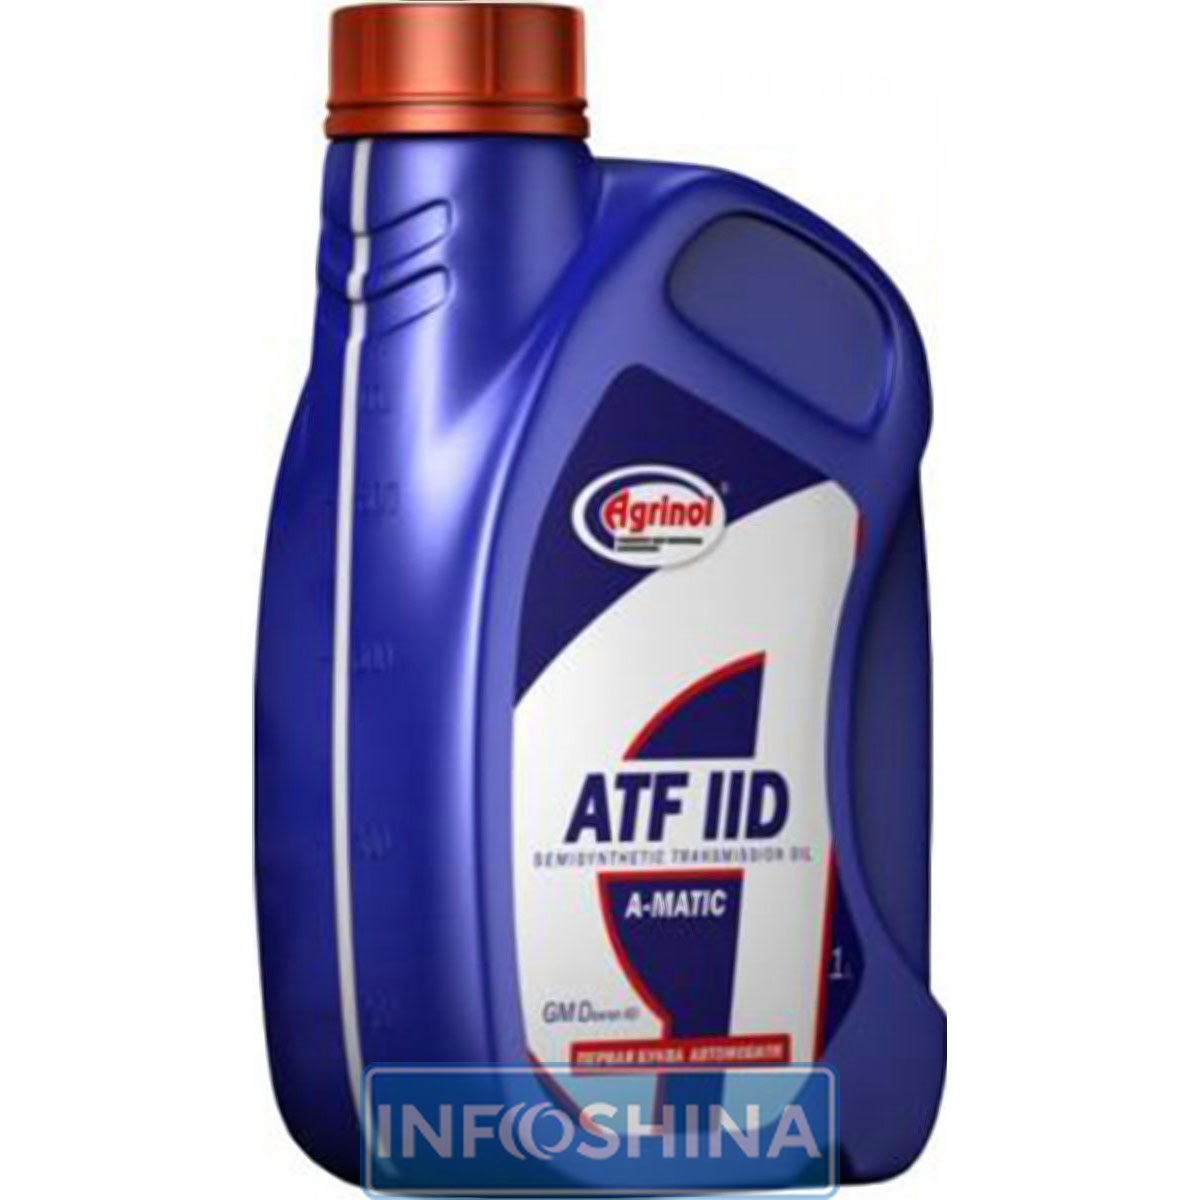 Купить масло Agrinol ATF IID